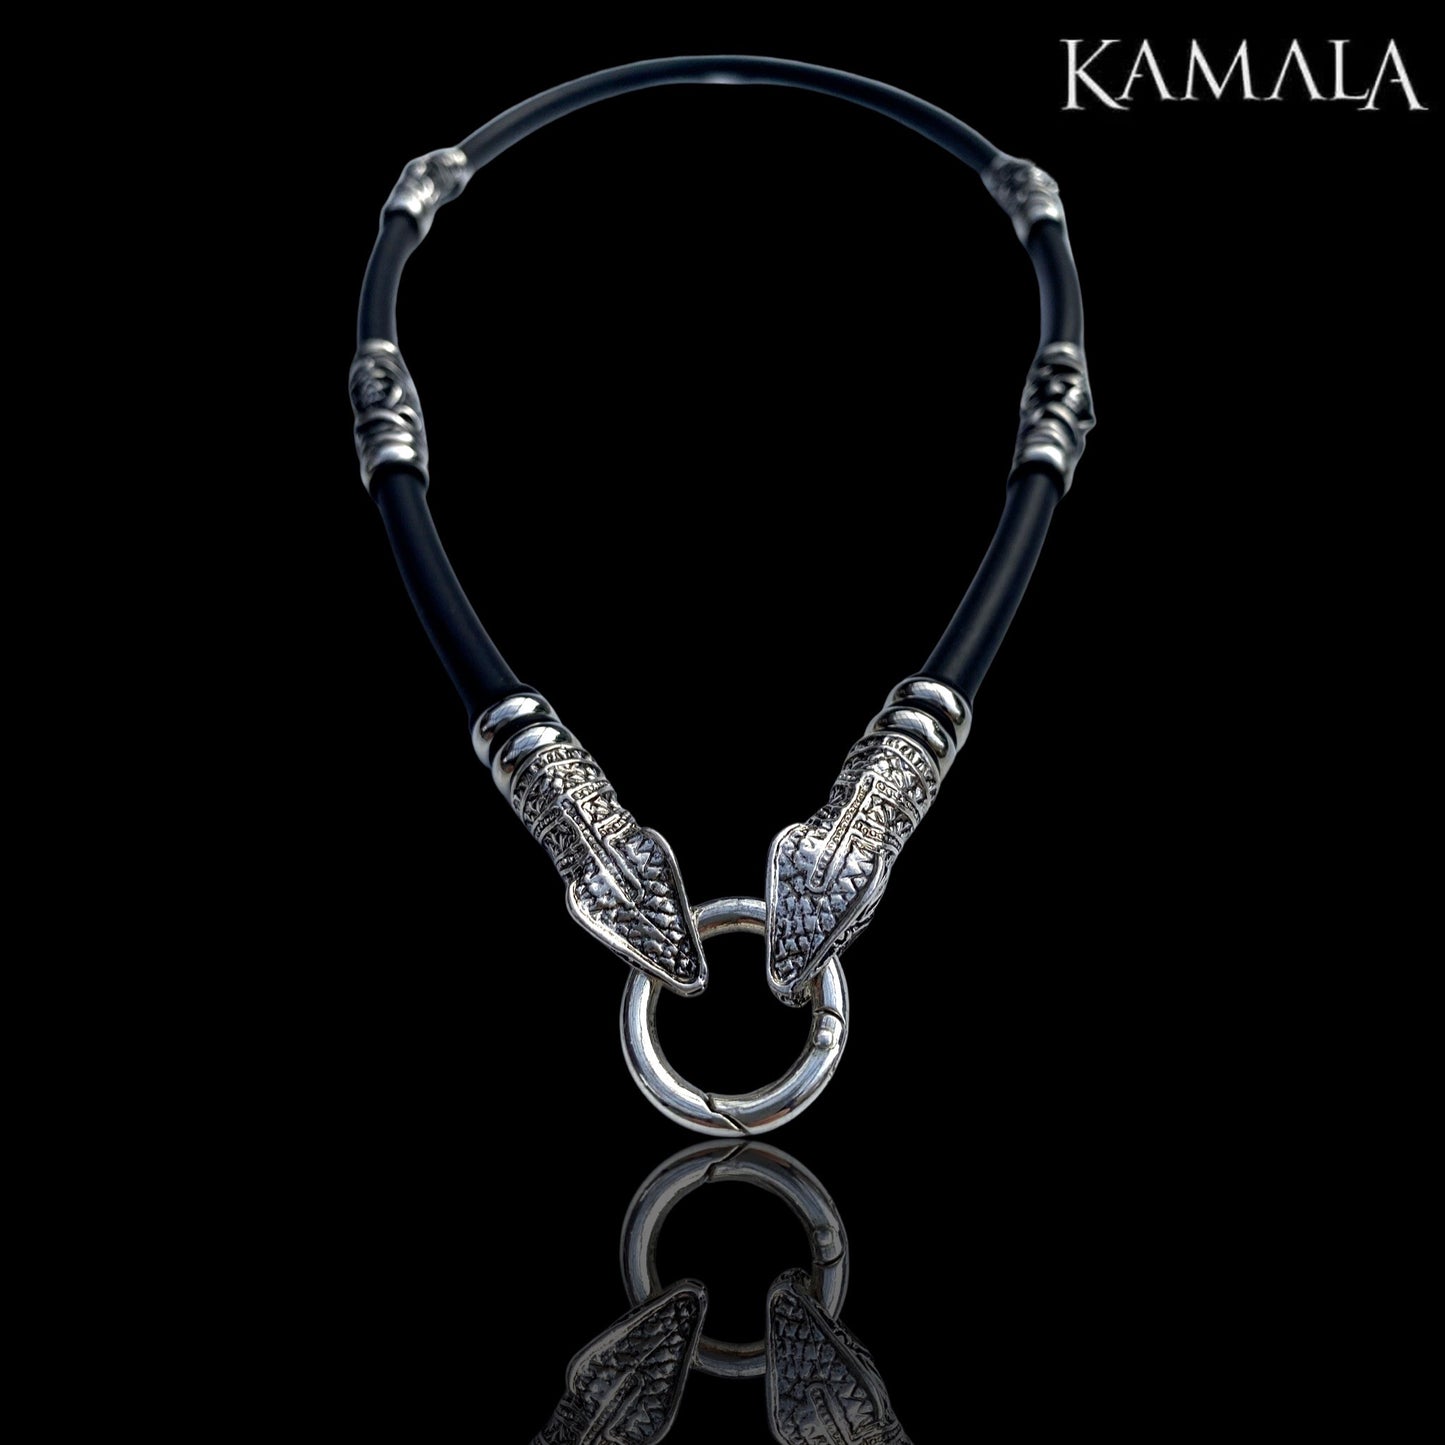 Schwarze Kautschuk Halskette mit Skulls und Schlangen - Edelstahl